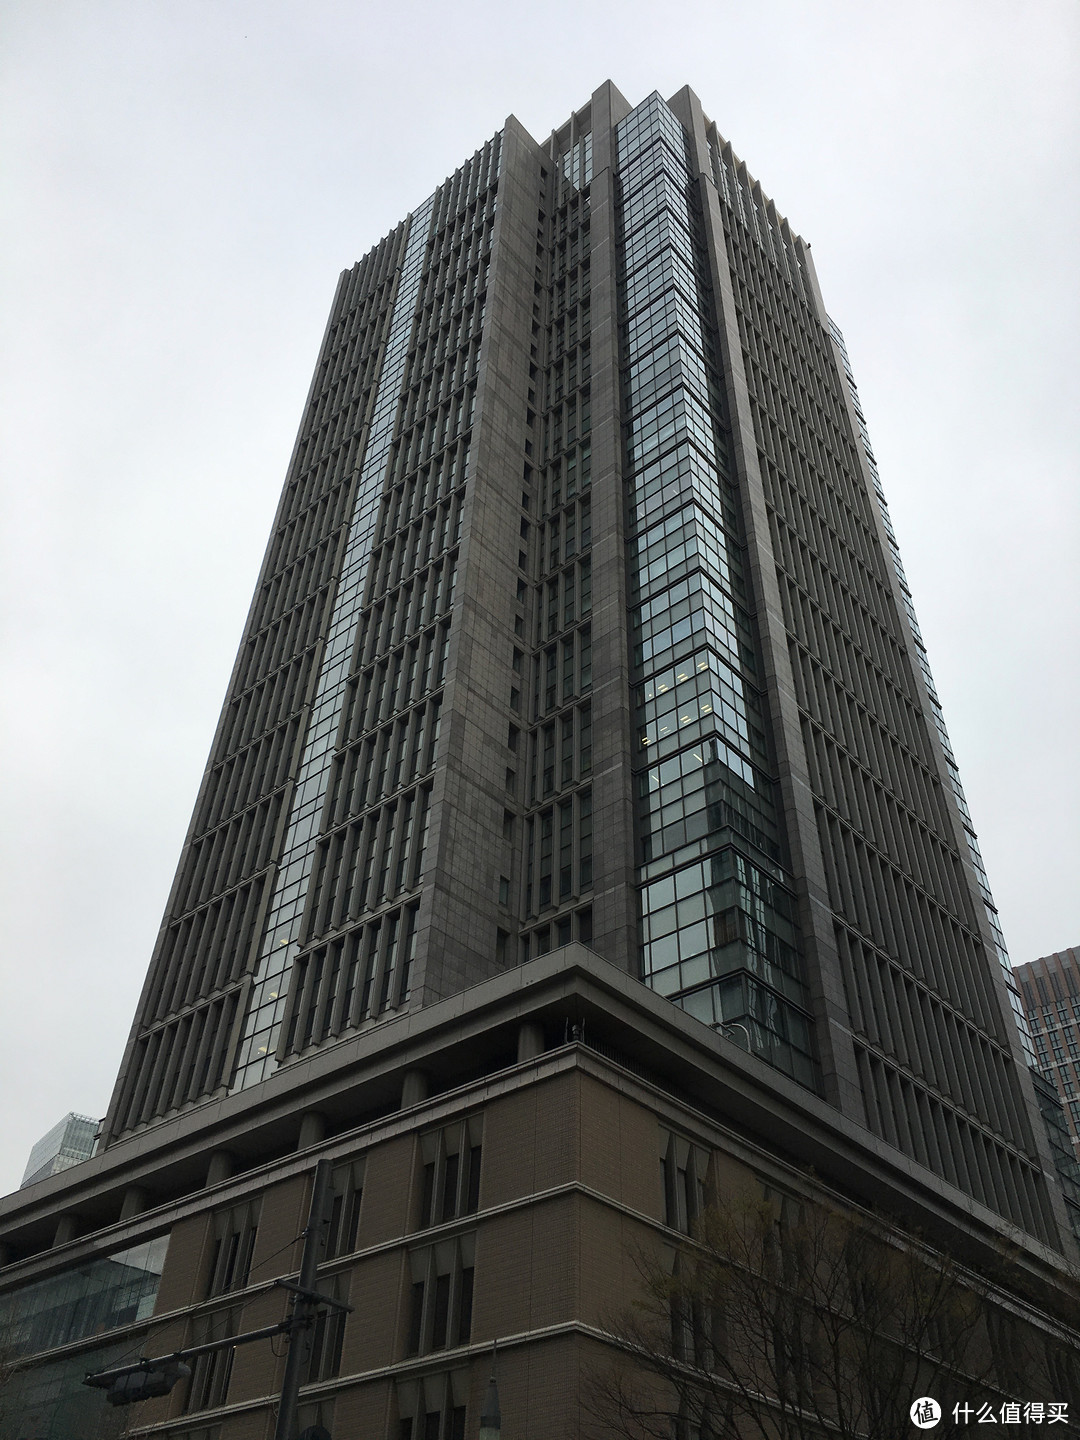 著名的丸之内大厦，建立于1923年，高37层。大财团三菱的大本营